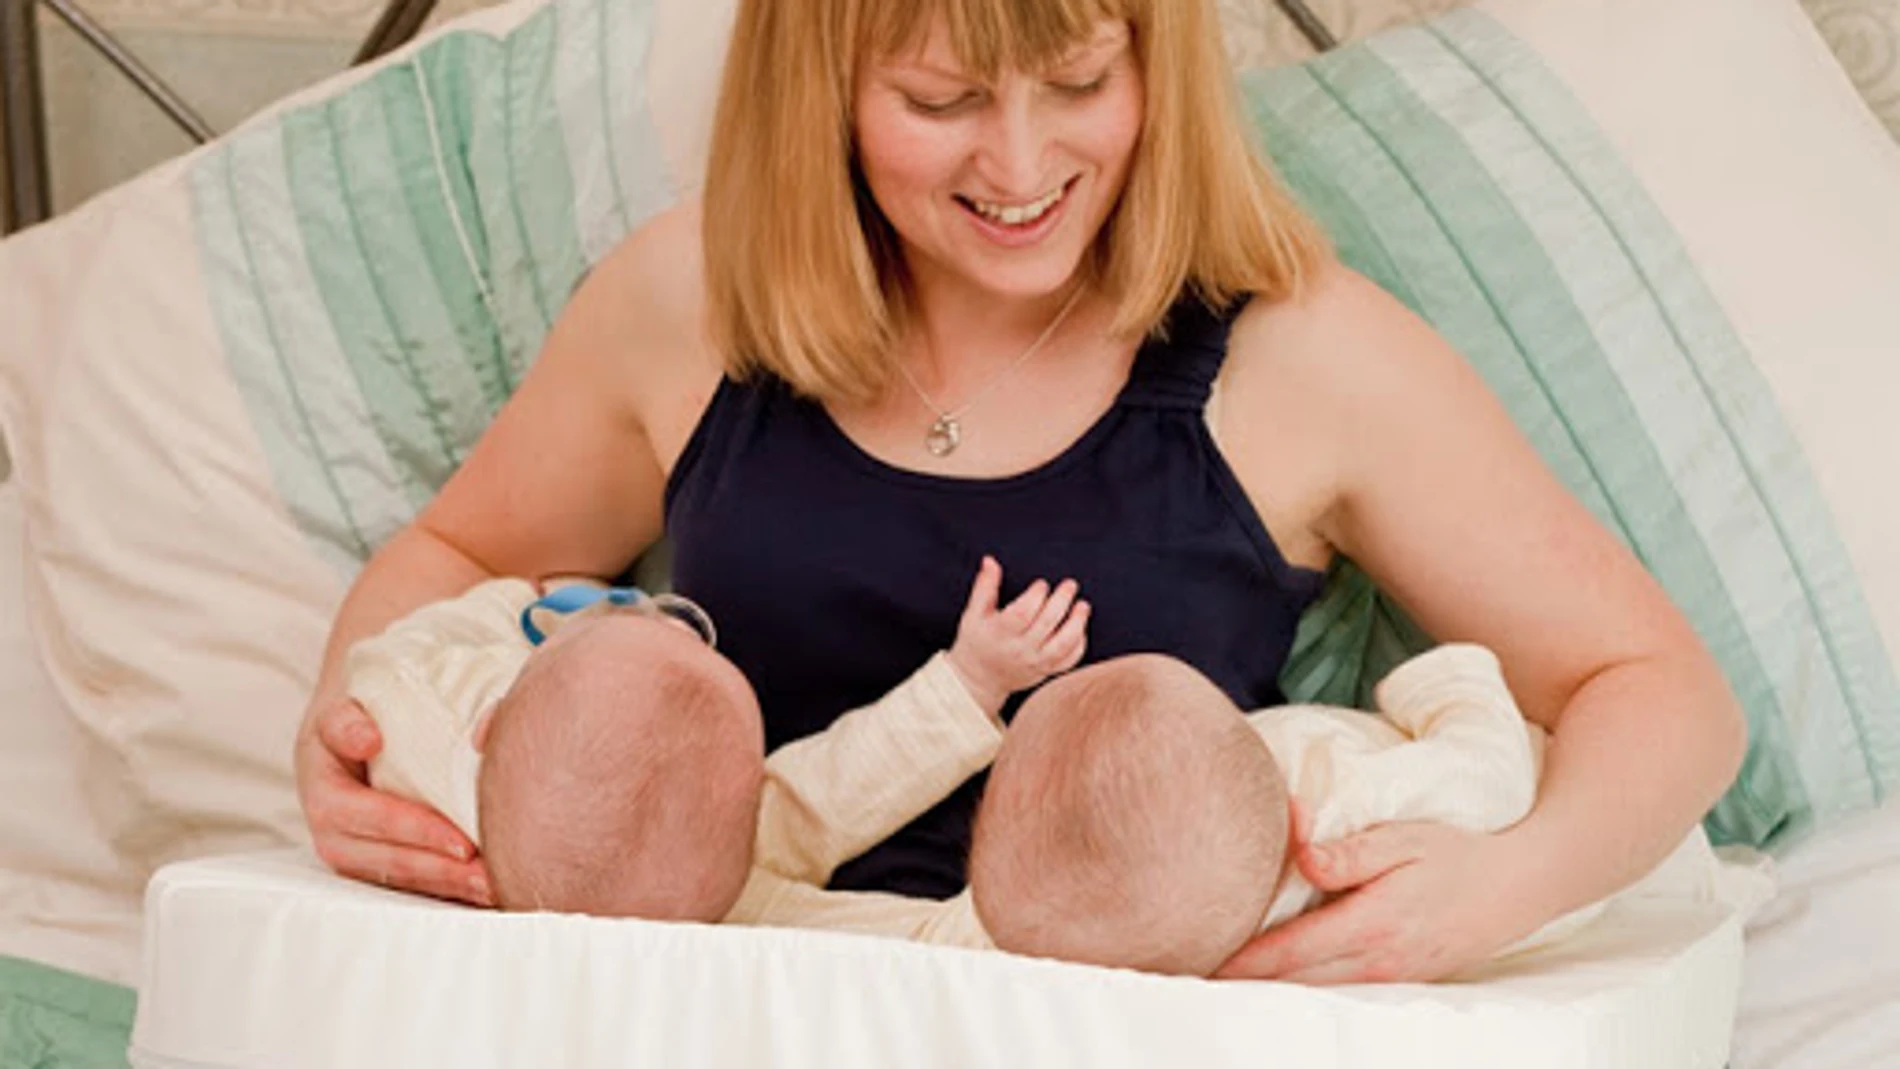 En algunos casos, cada mama proporciona una cantidad de leche distinta, por lo que alternar los pechos entre bebés permitirá estimular la producción de leche y establecer un suministro más uniforme.